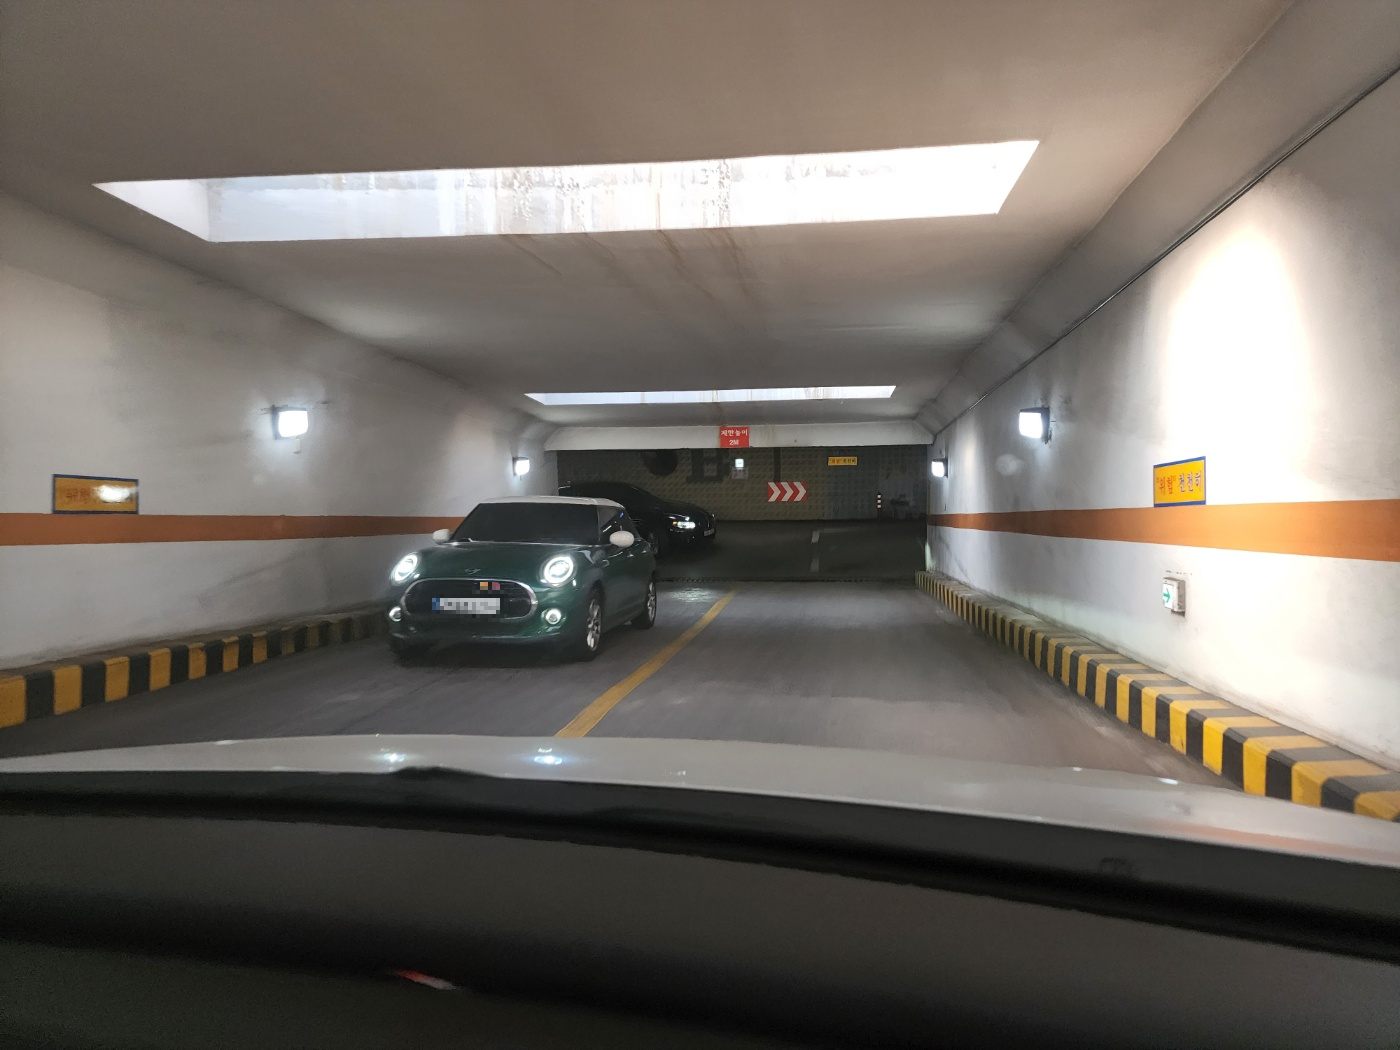 주차장으로 들어가는 터널과 출차하려고 올라오는 초록색 자동차 